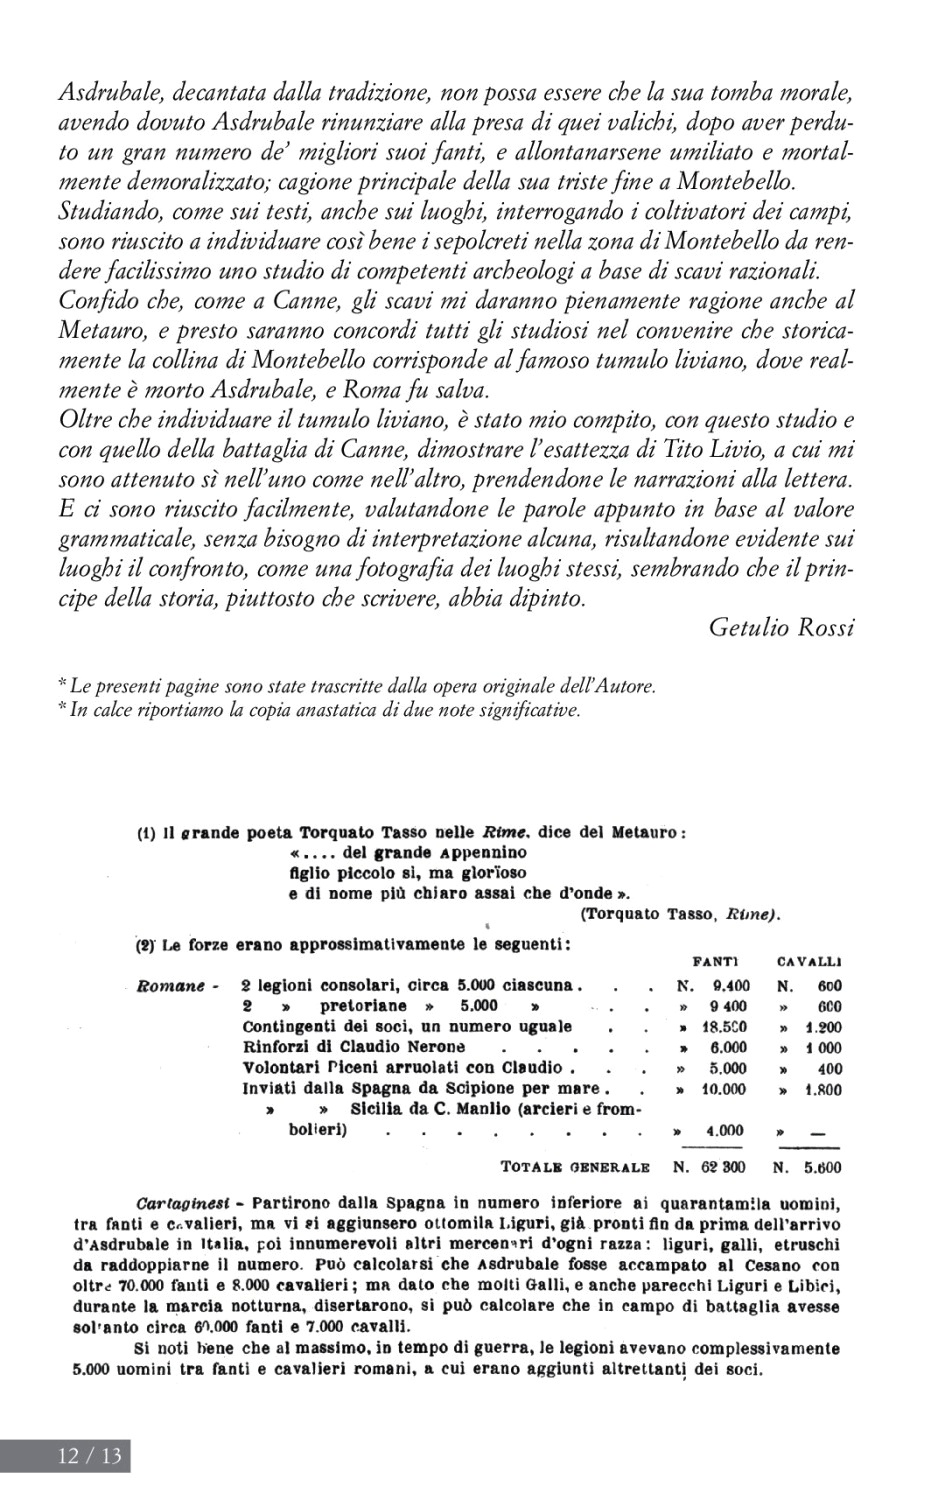 La torr i arduna tutti 2005 p.012